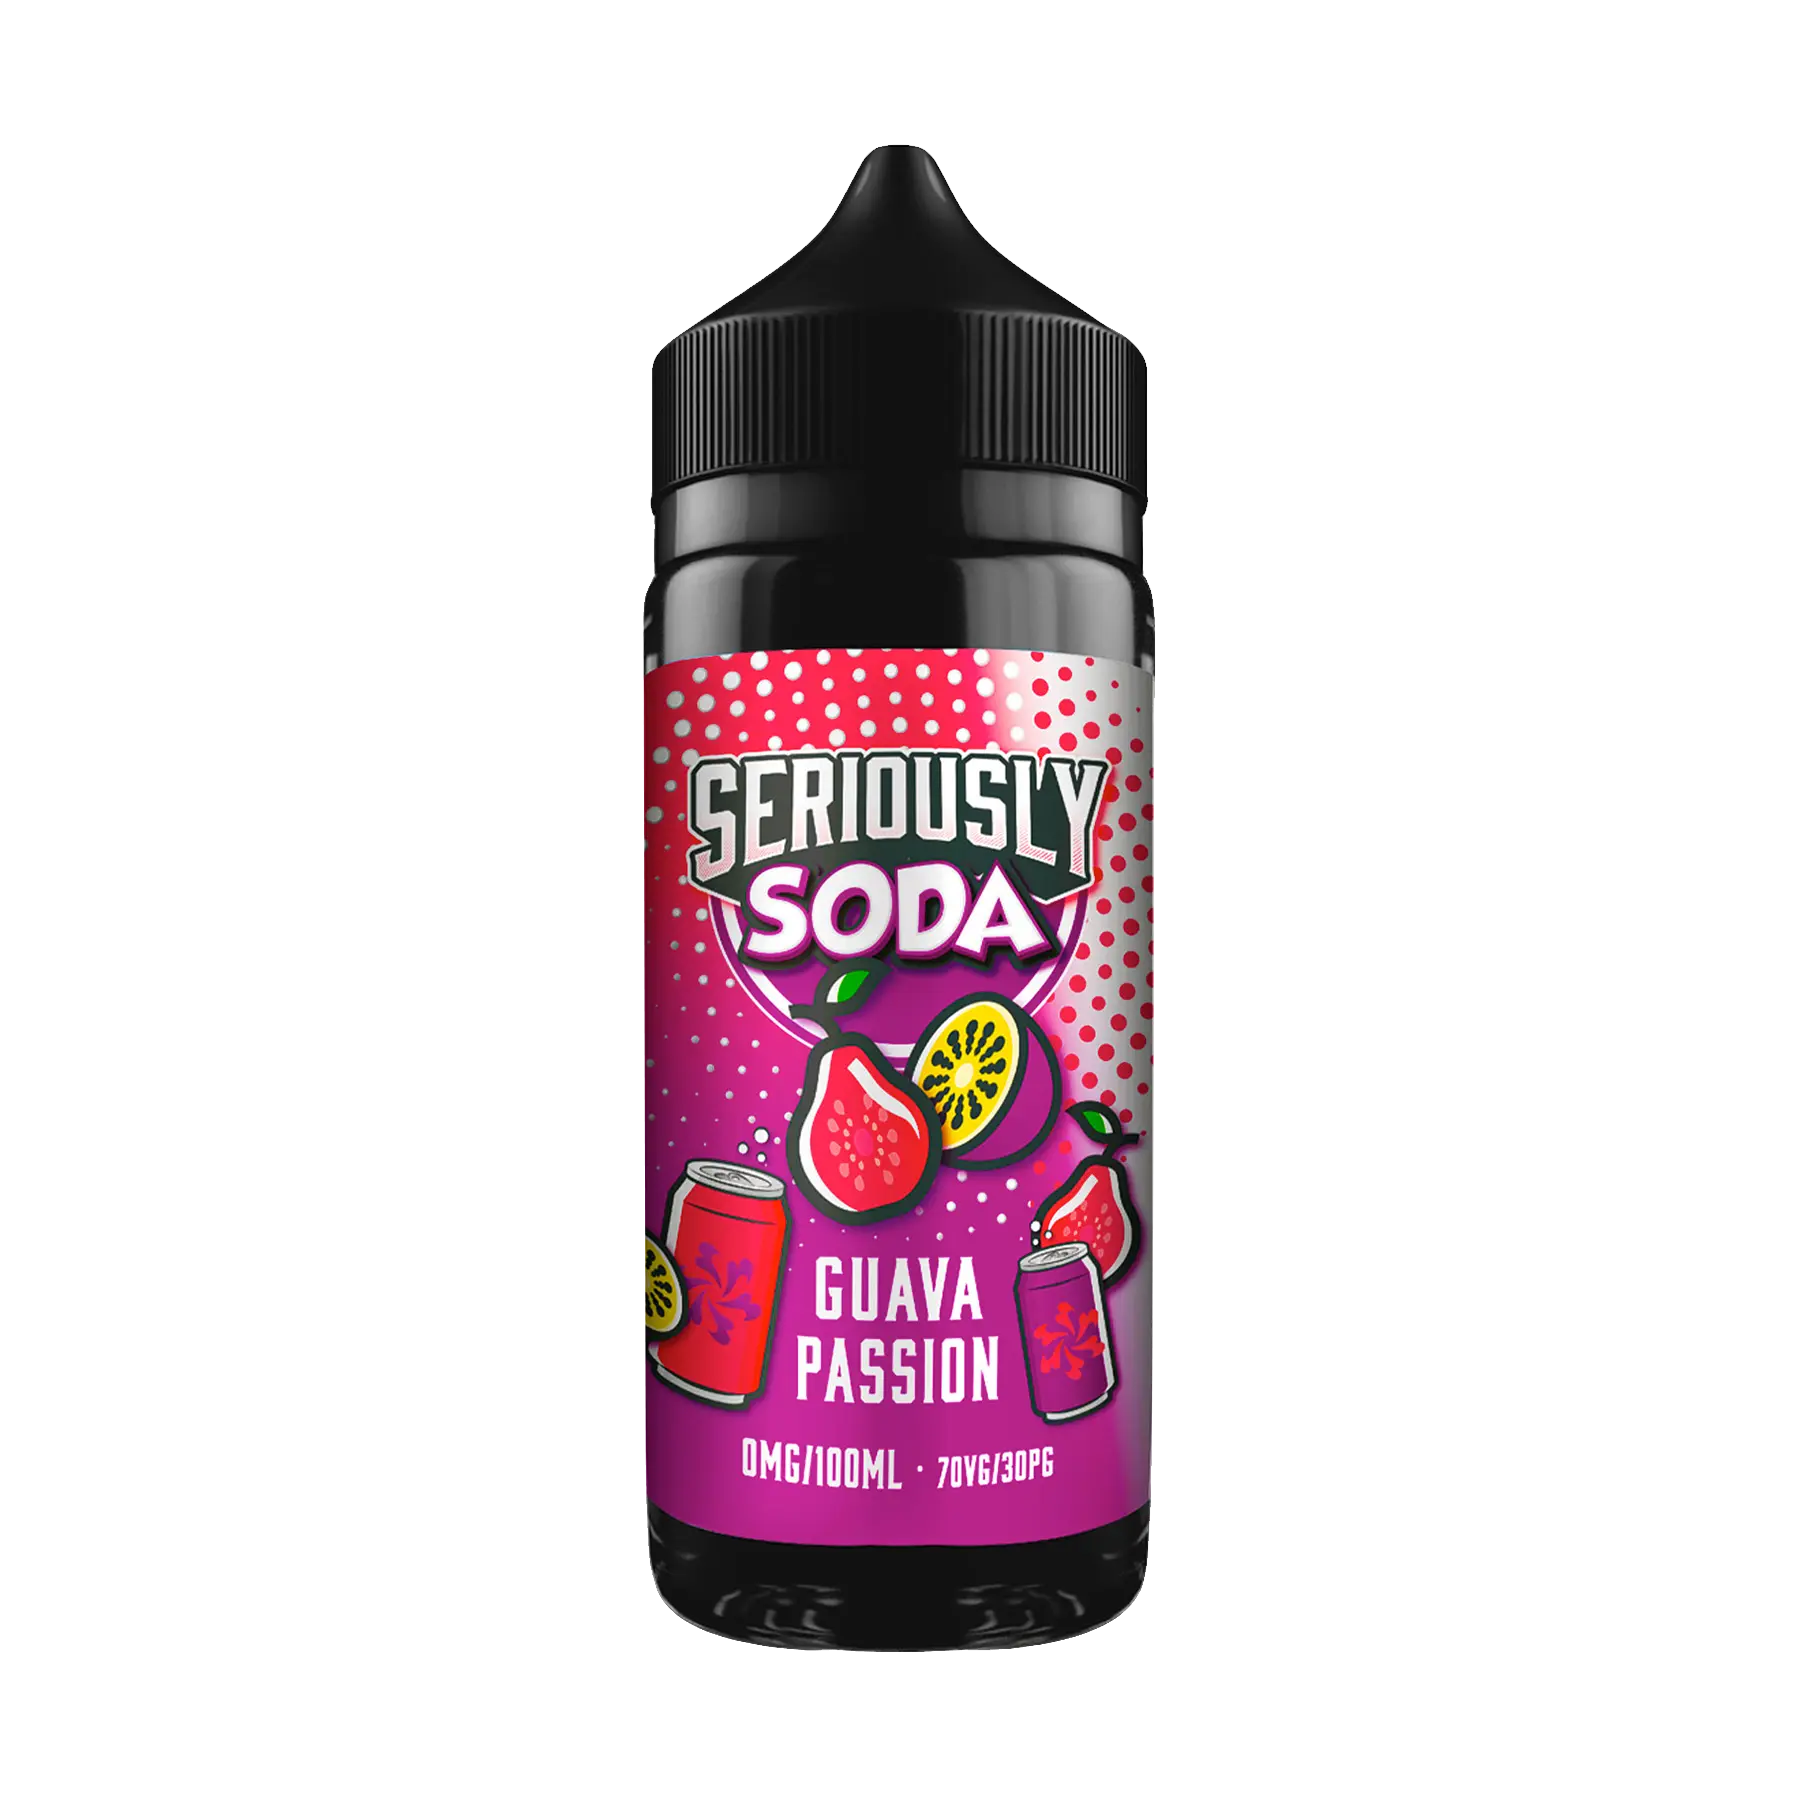 Doozy Seriously Soda Guava Passion 100ml E Liquid Shortfill